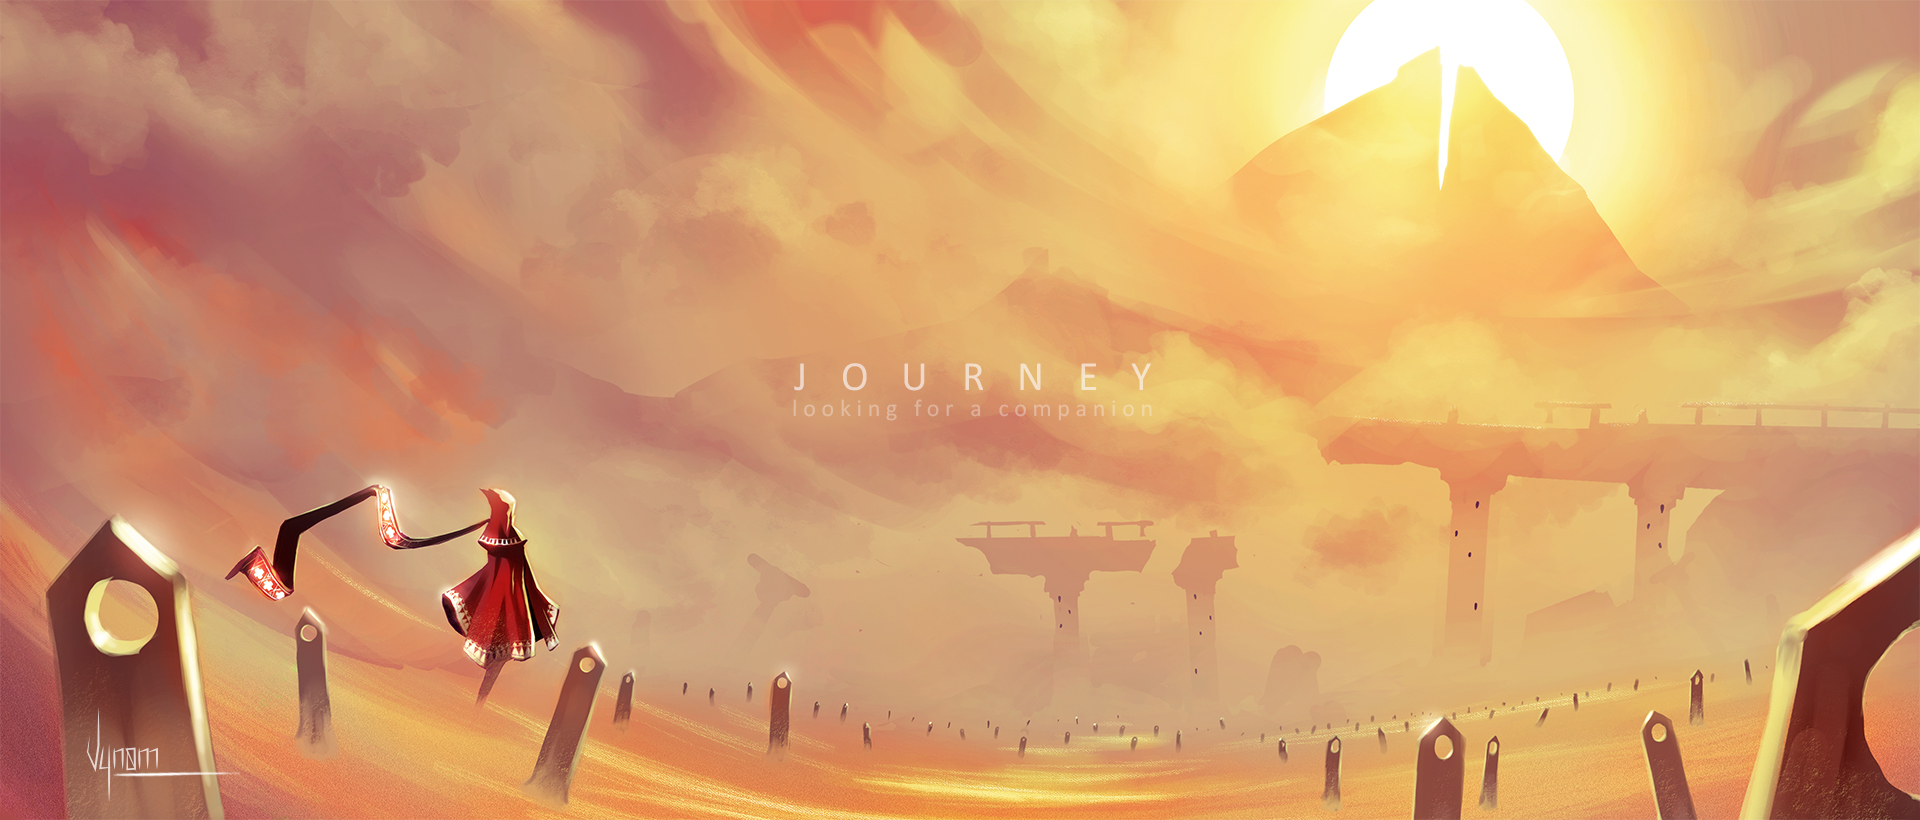 City journey. Journey игра. Journey игра Art. Journey 2012. Journey пейзажи.